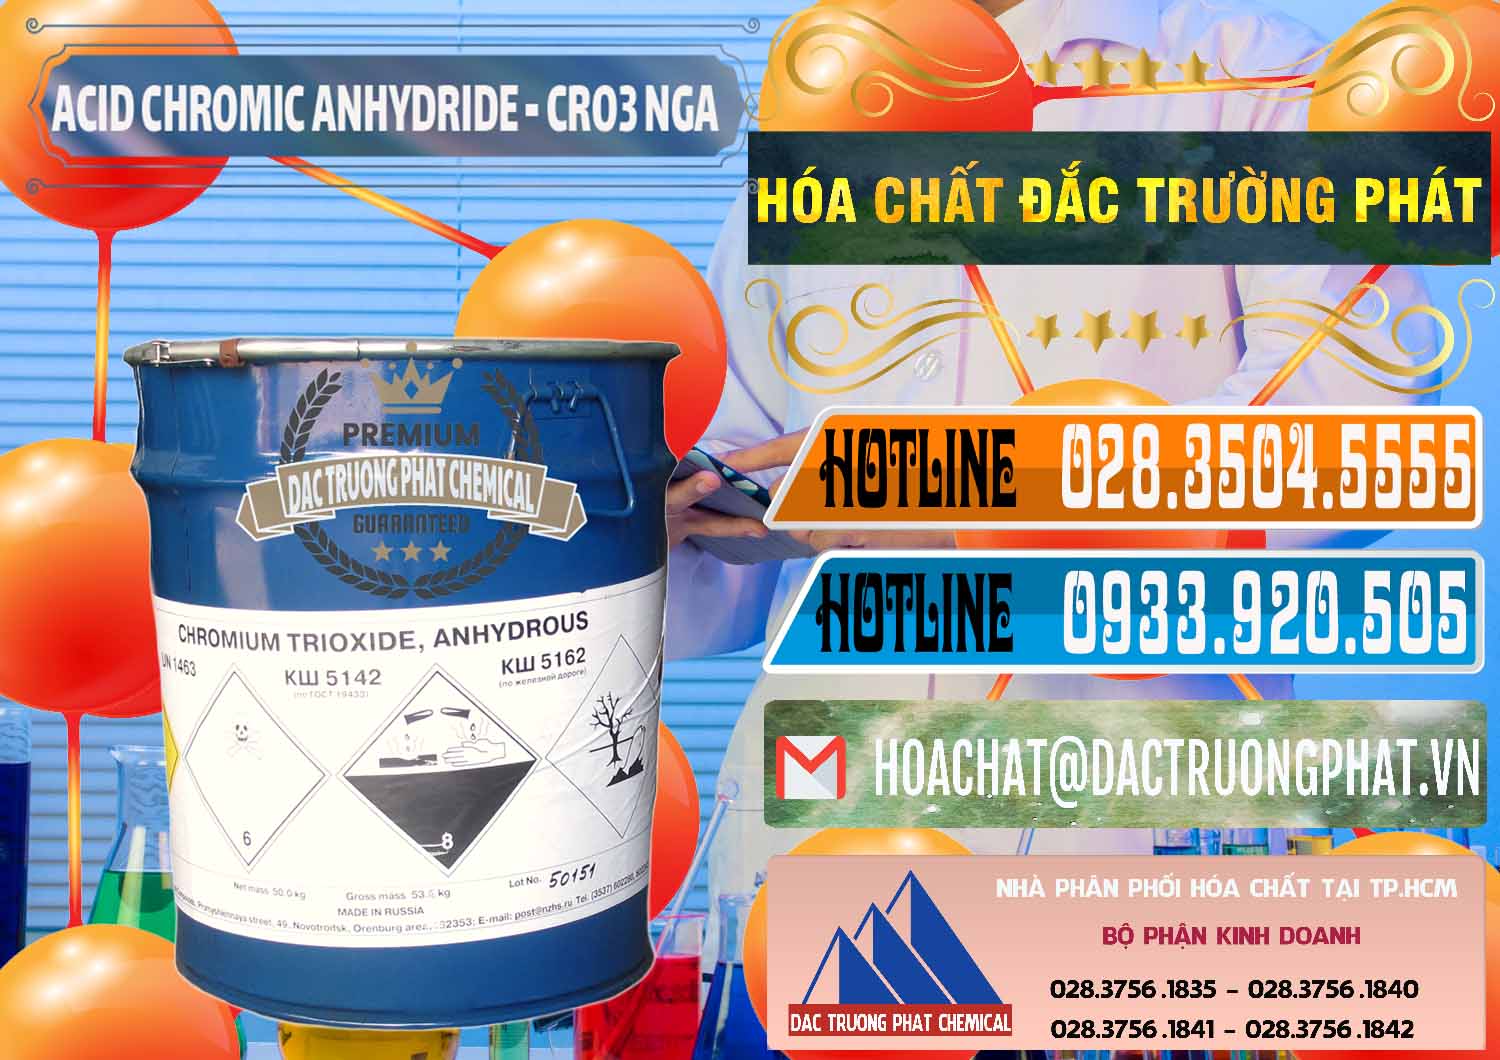 Nơi nhập khẩu ( bán ) Acid Chromic Anhydride - Cromic CRO3 Nga Russia - 0006 - Công ty cung cấp và phân phối hóa chất tại TP.HCM - stmp.net